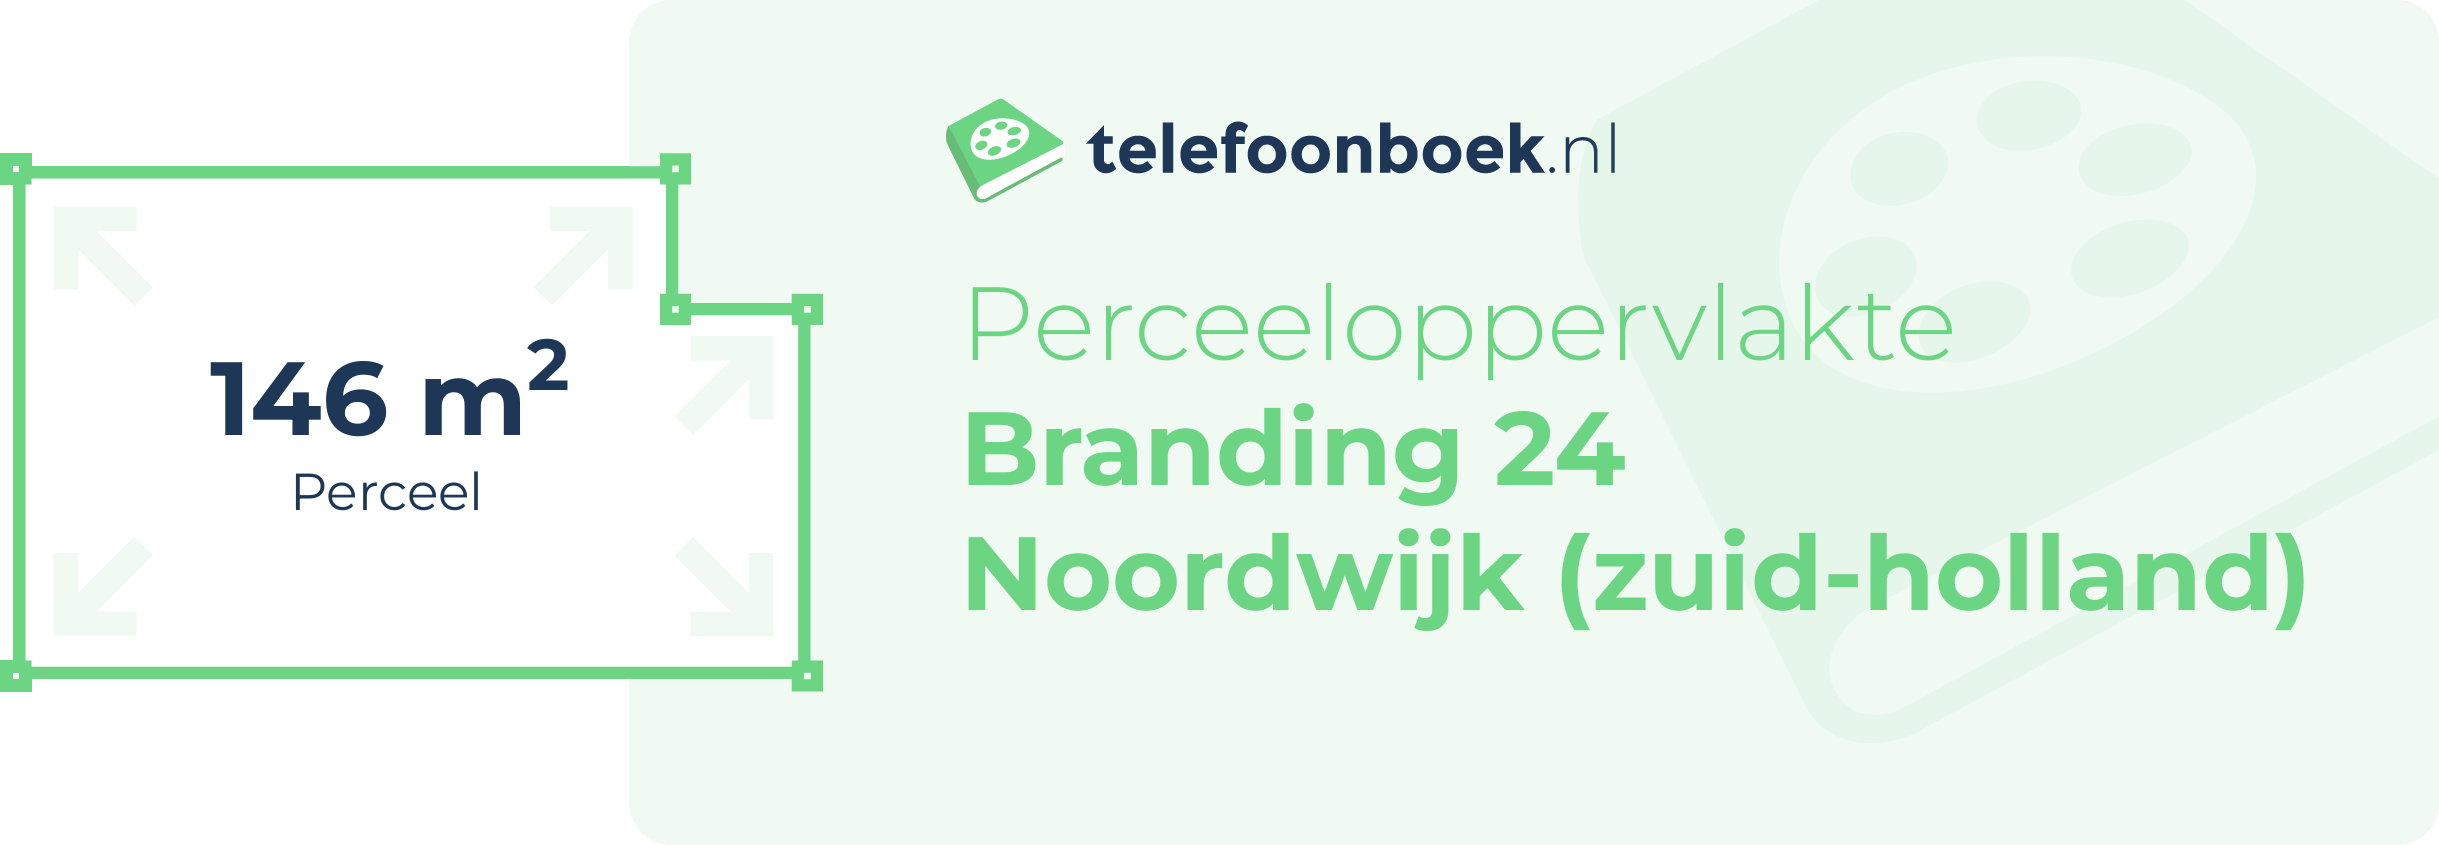 Perceeloppervlakte Branding 24 Noordwijk (Zuid-Holland)